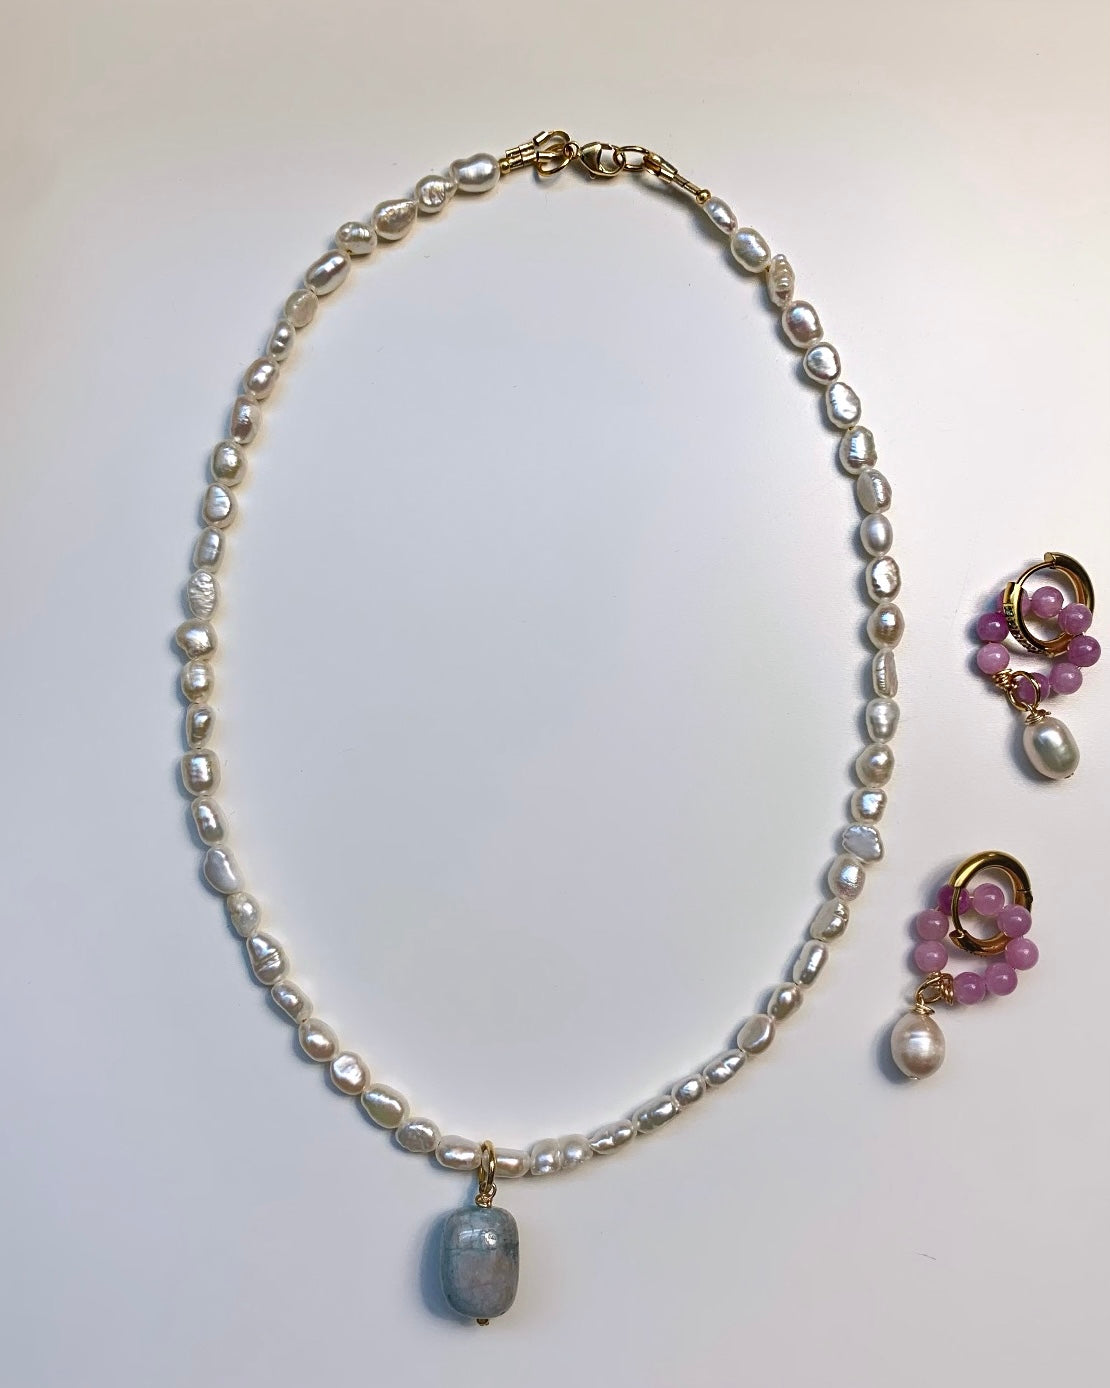 Aquamarine necklace